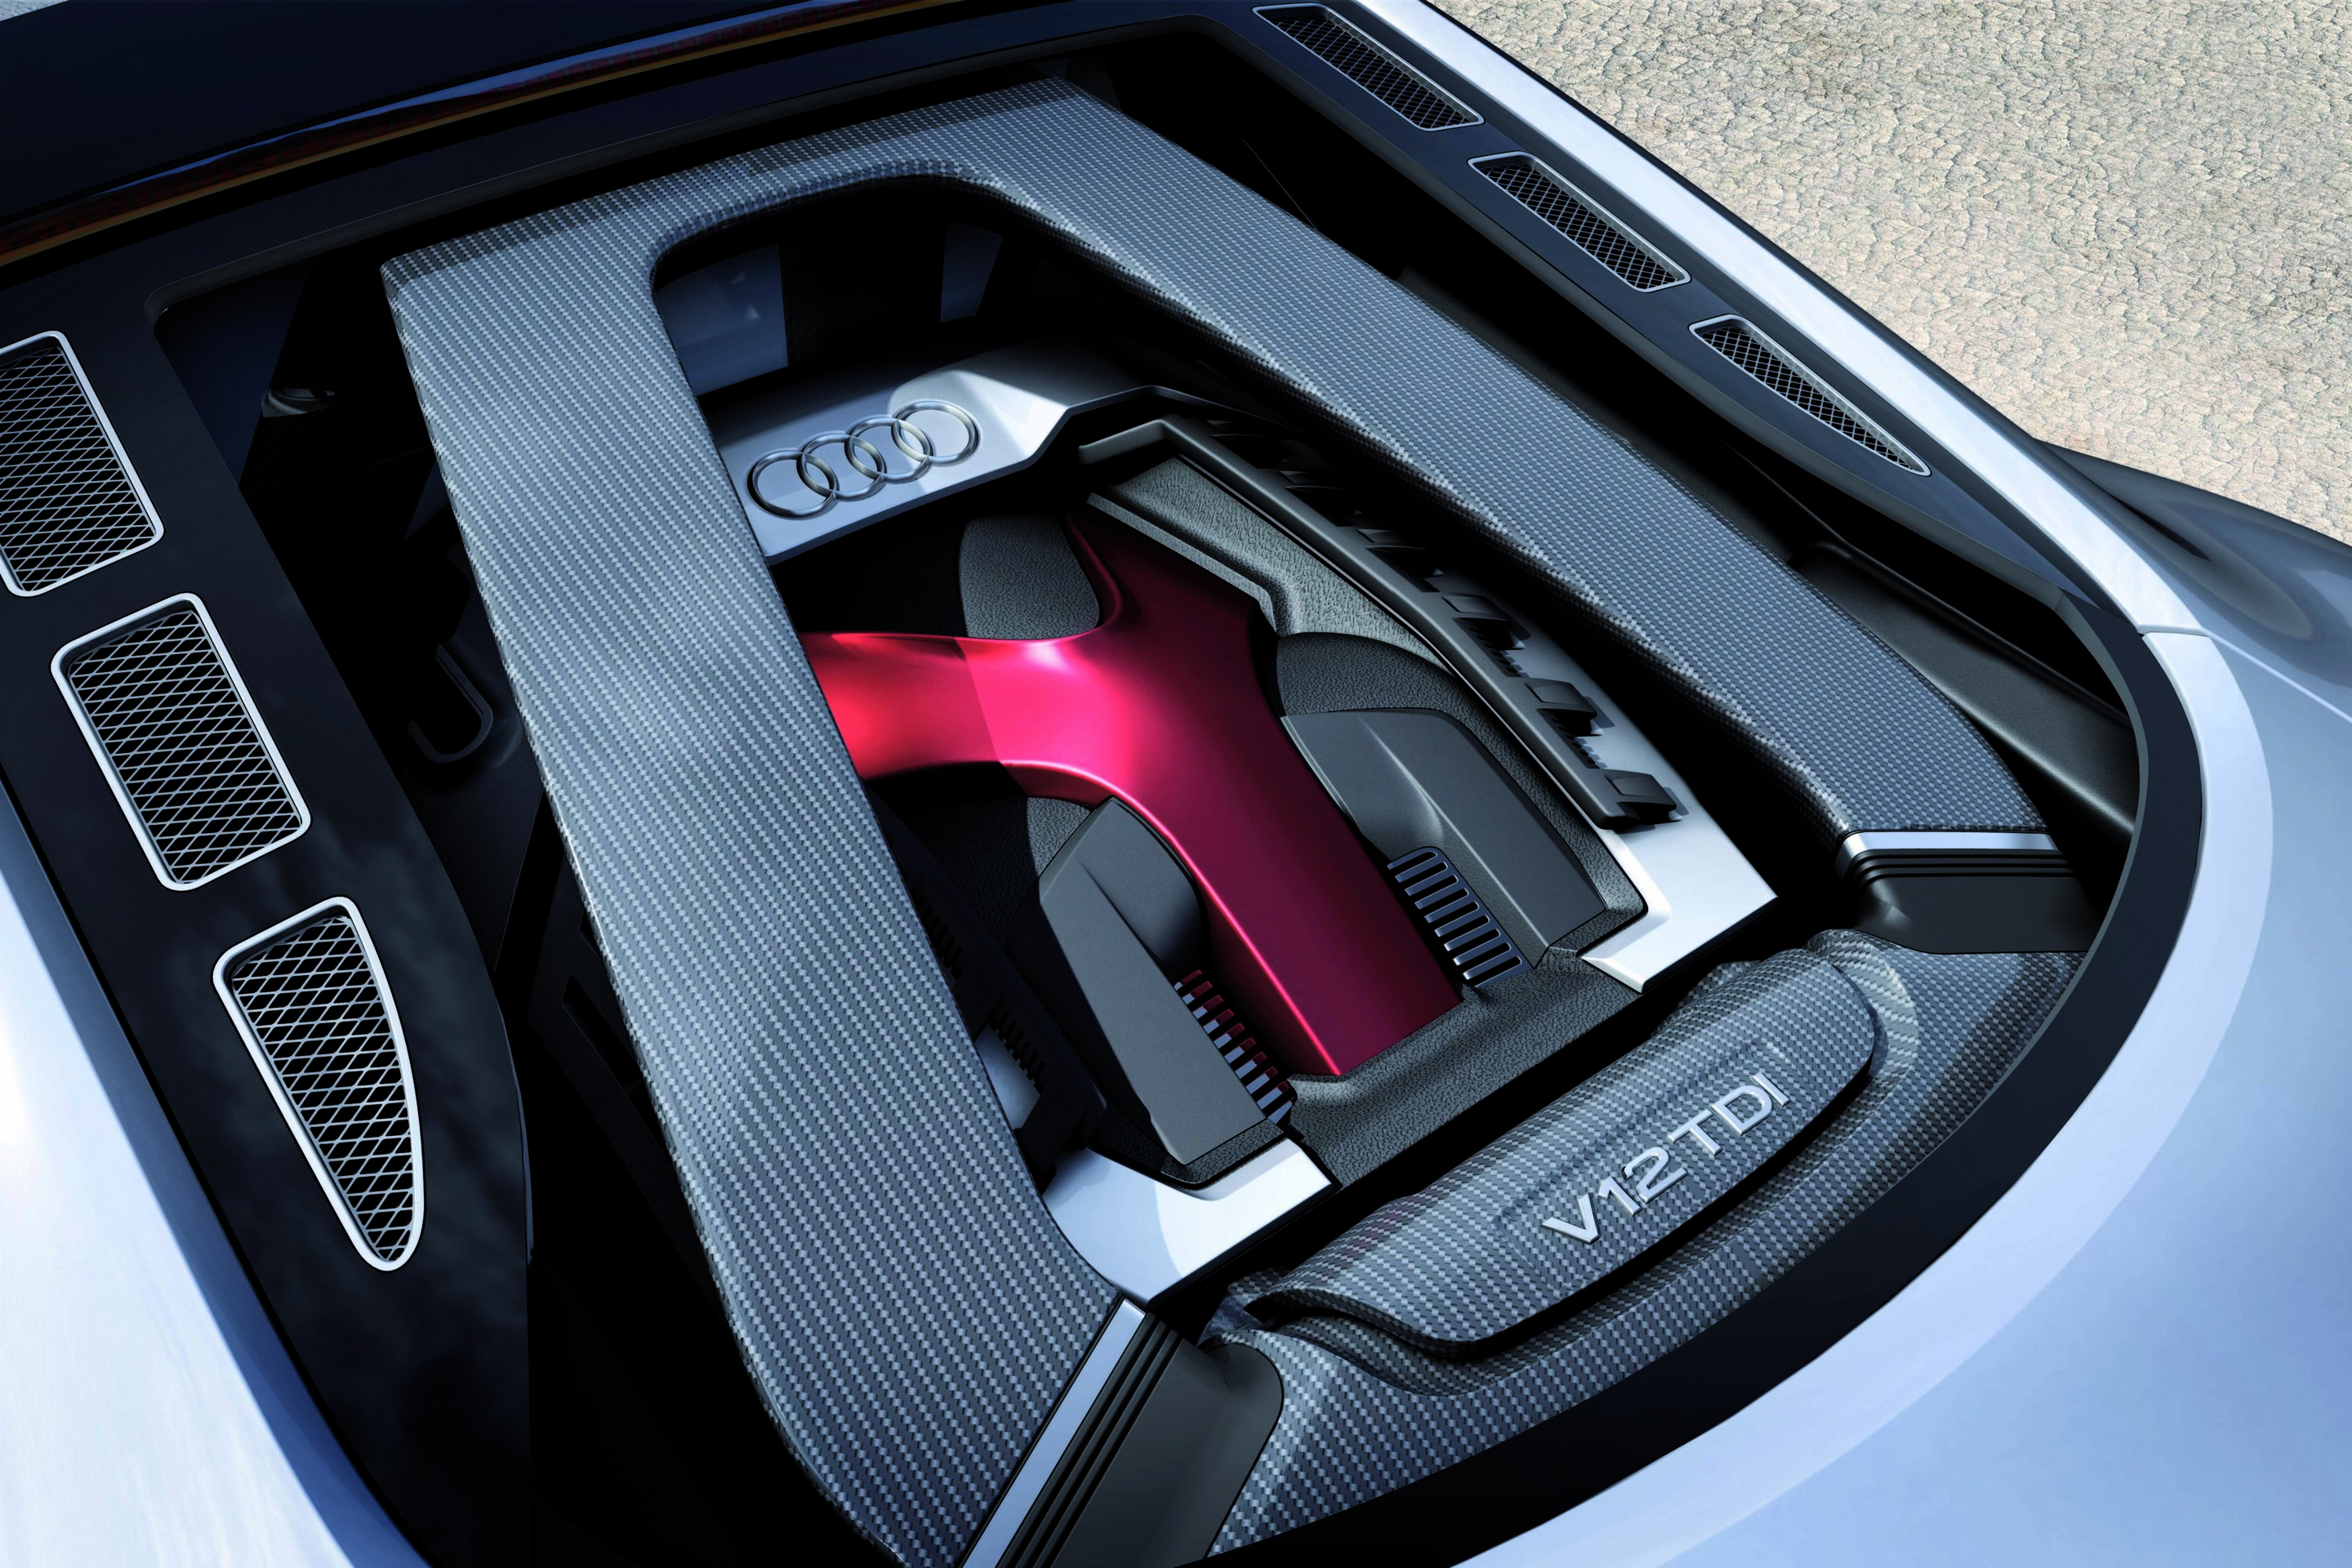 Audi R8 V12 TDI concept